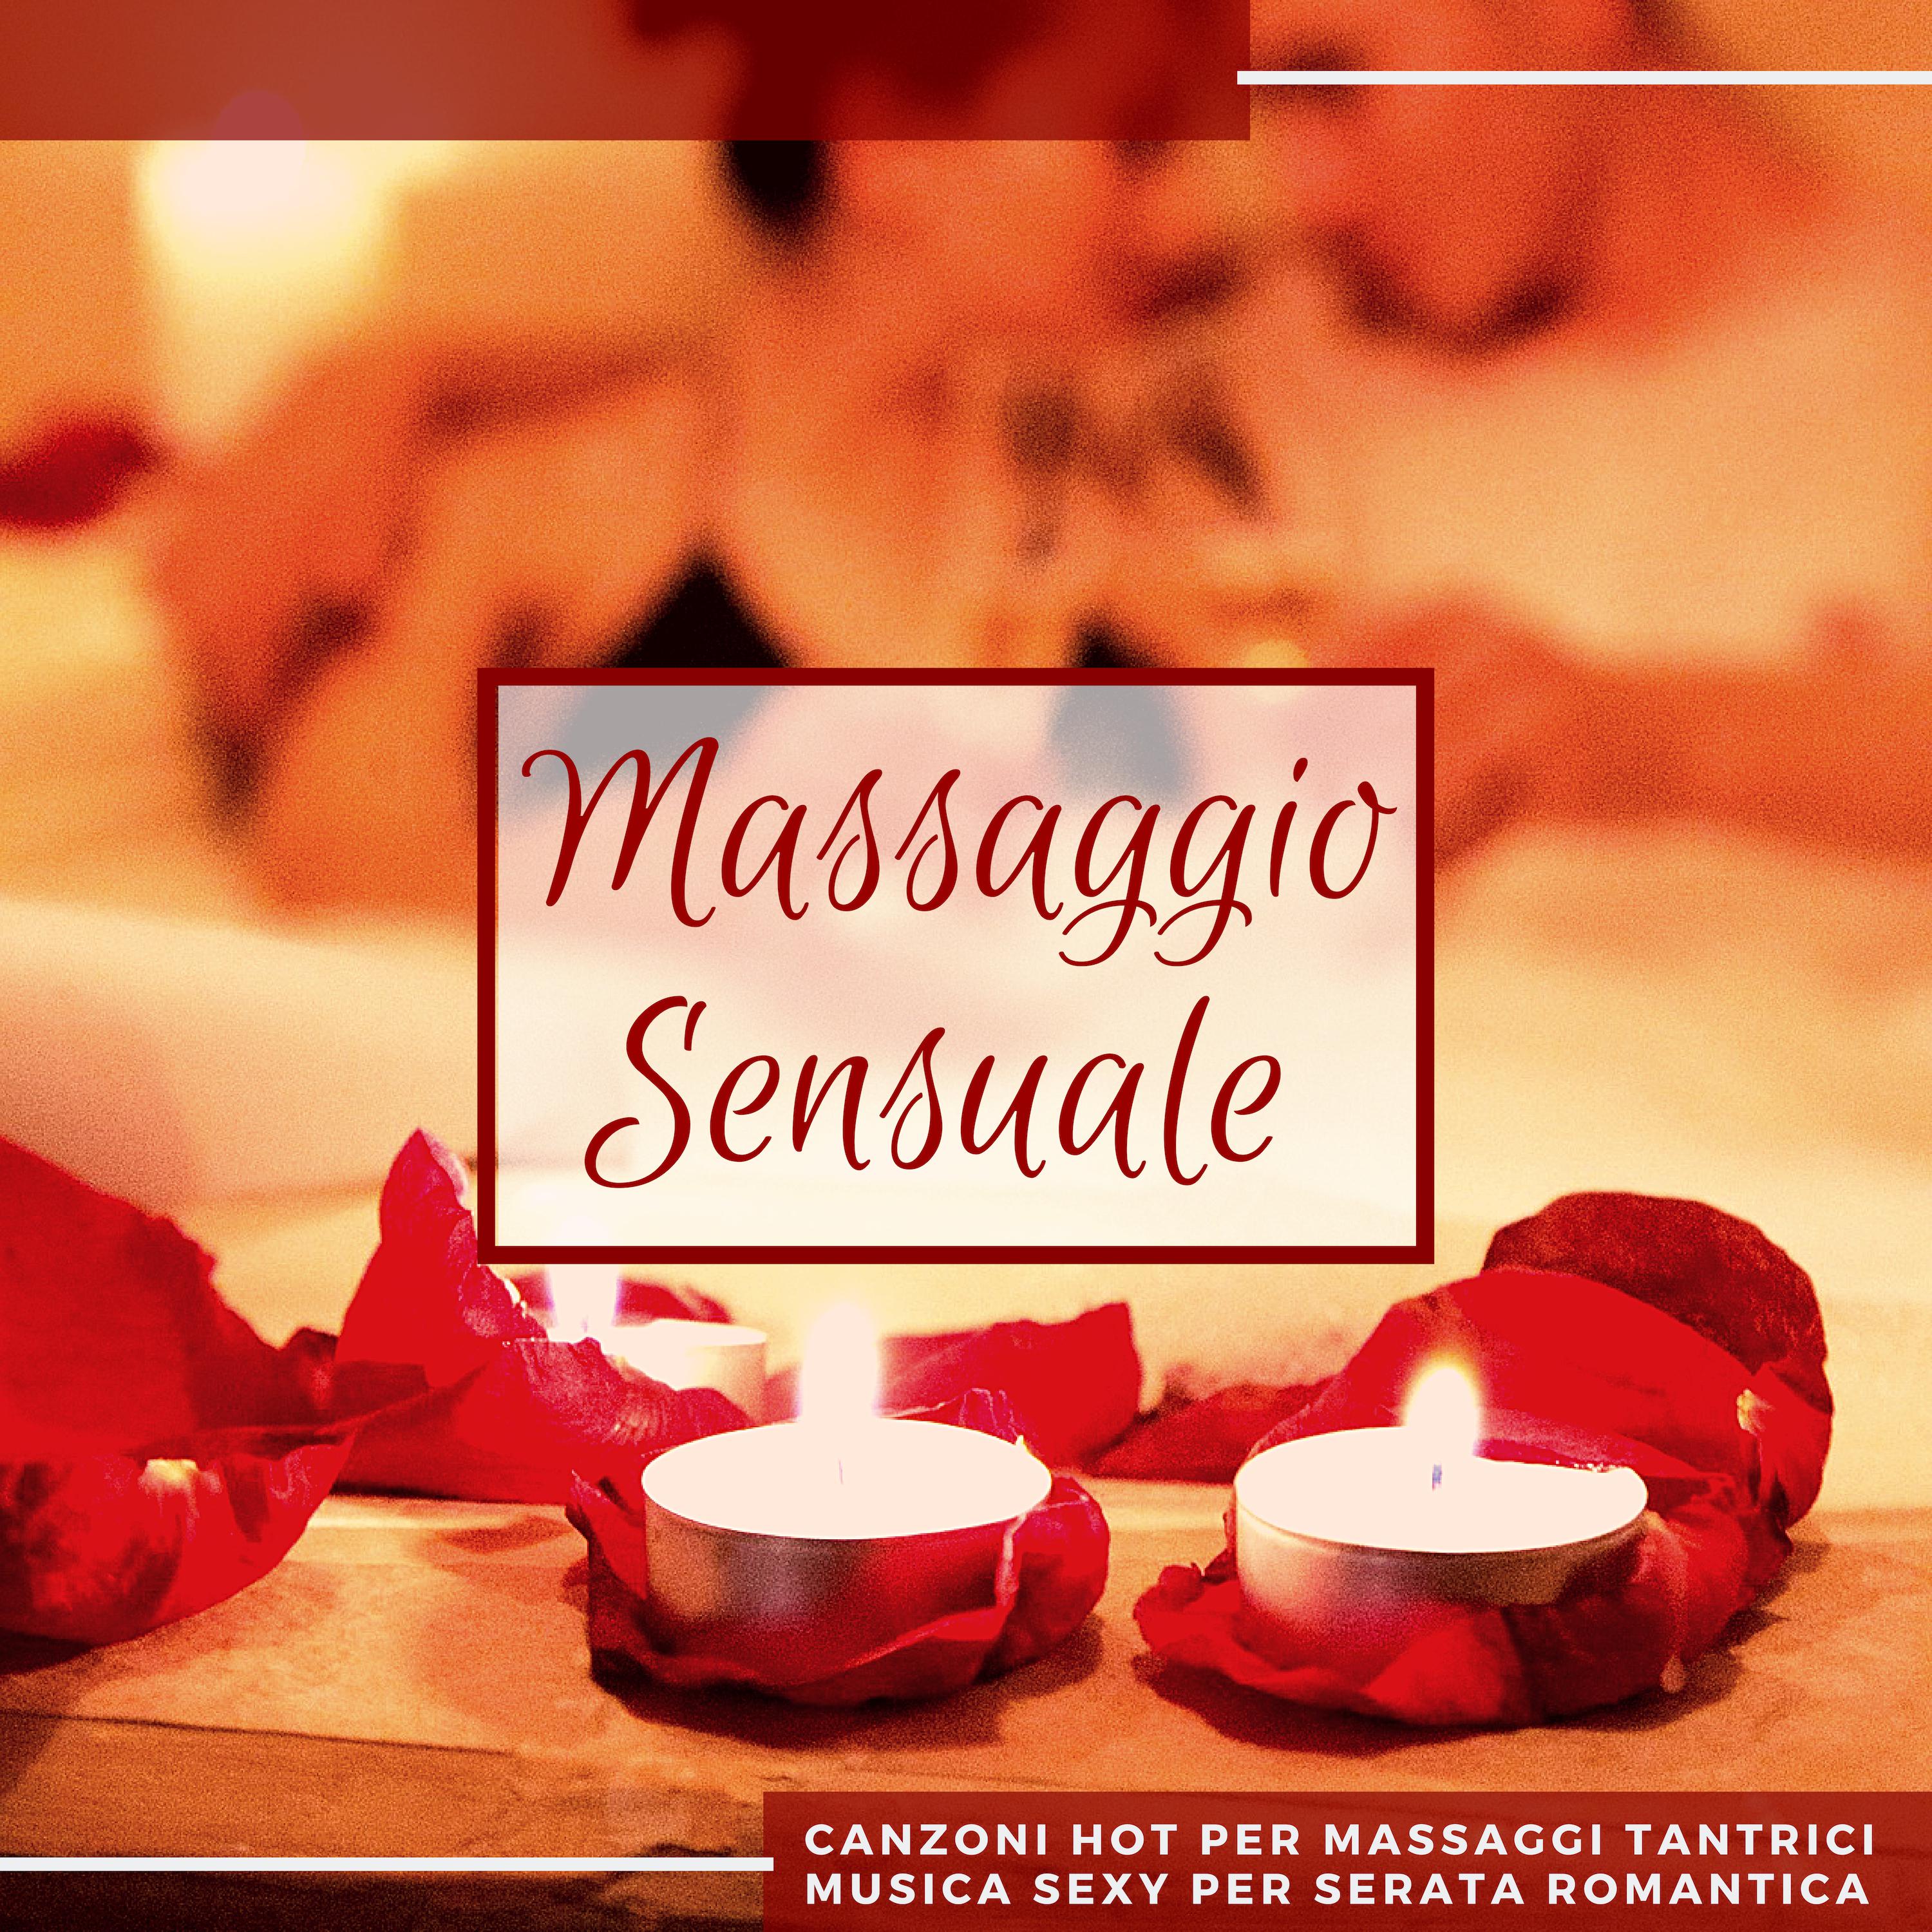 Massaggio Sensuale - Canzoni Hot per Massaggi Tantrici, Musica **** per Serata Romantica